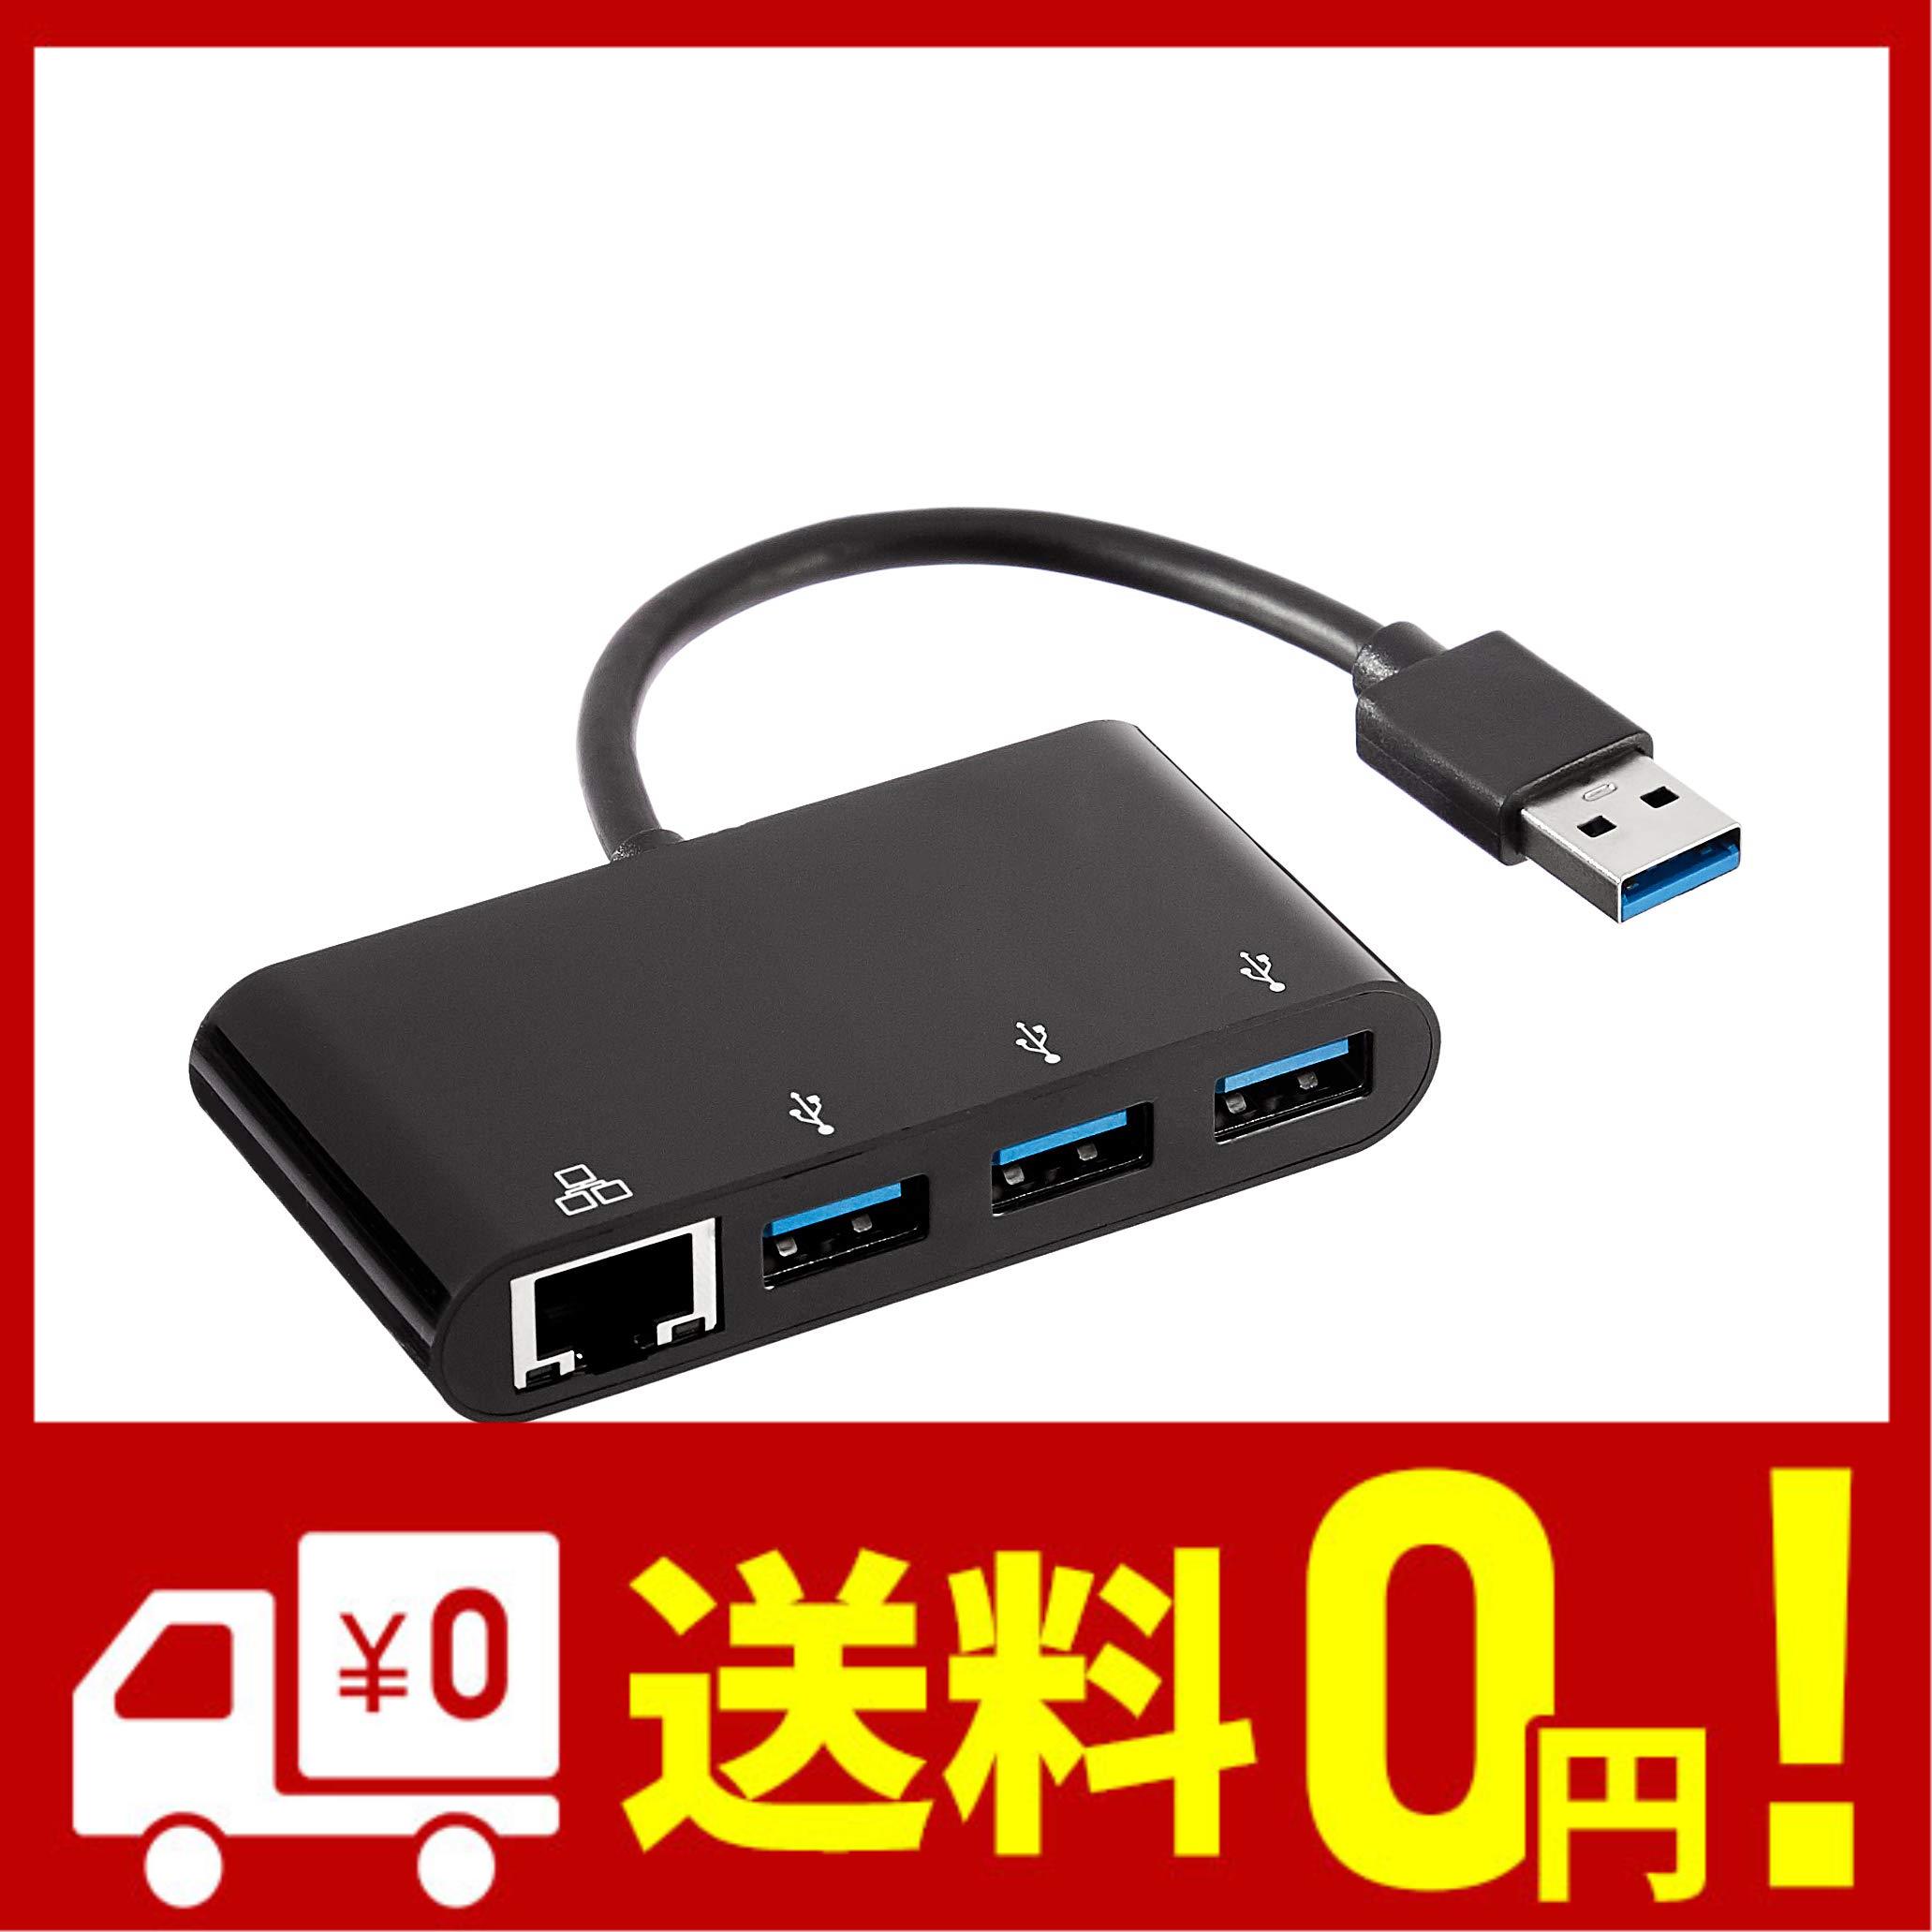 Amazonベーシック USBハブ アダプター 4ポート USB 3.0 ギガビット イーサネットポート付き RJ45 ブラック